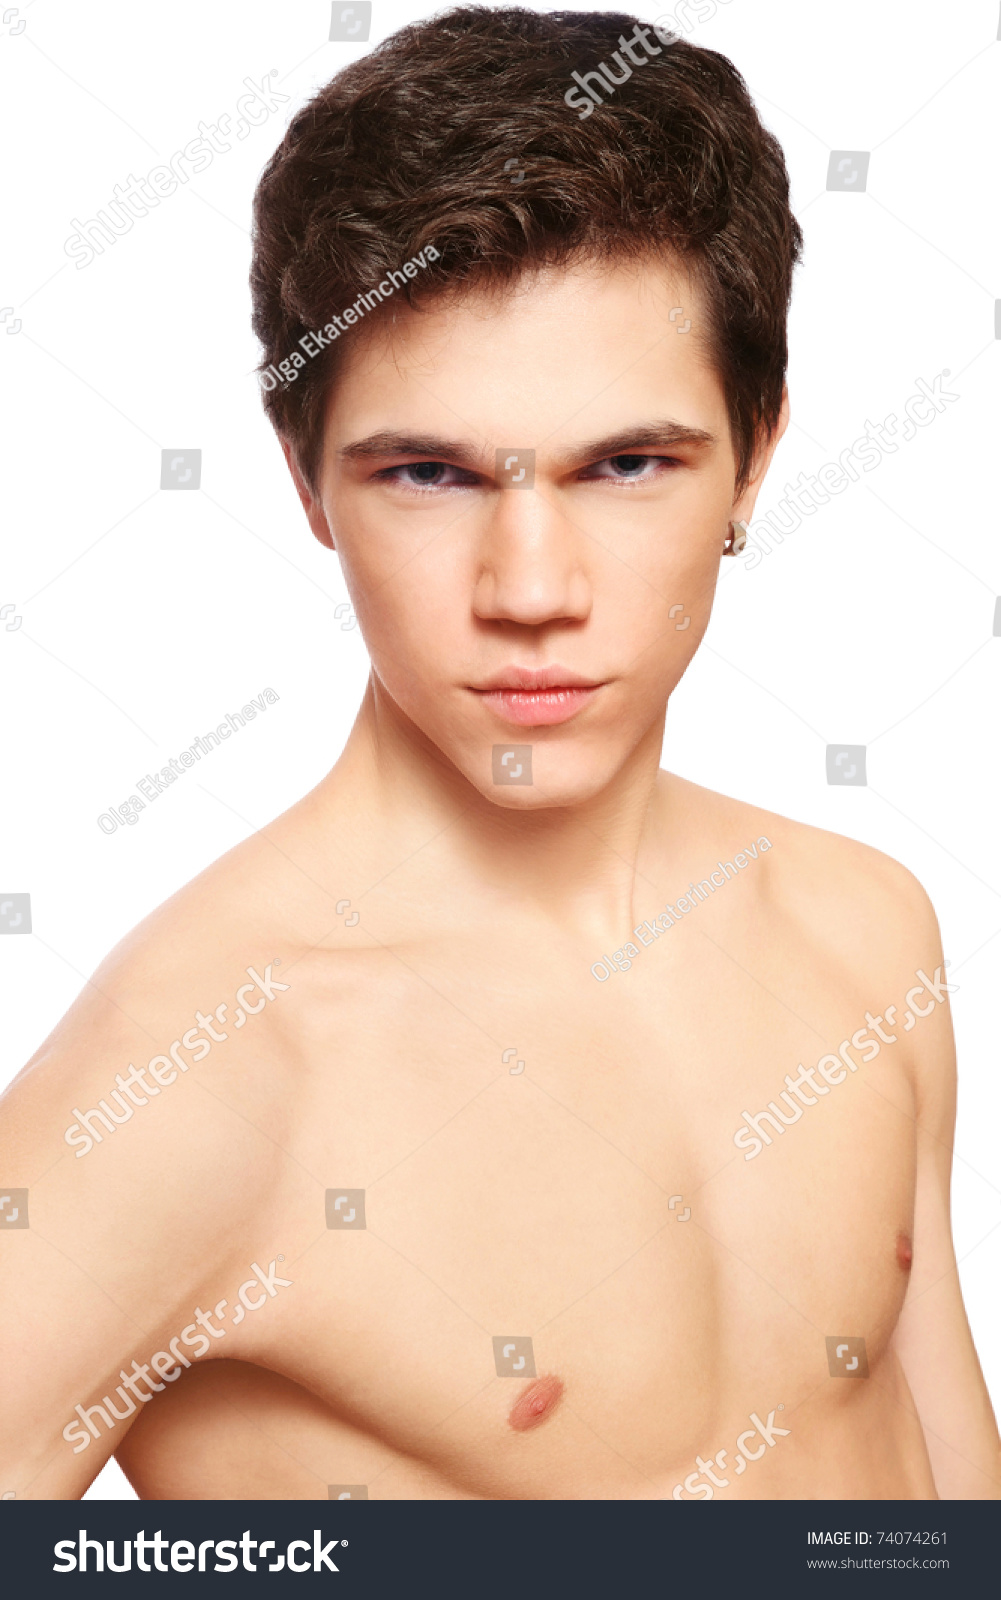 Sexy Muscle Teen Boy Nude